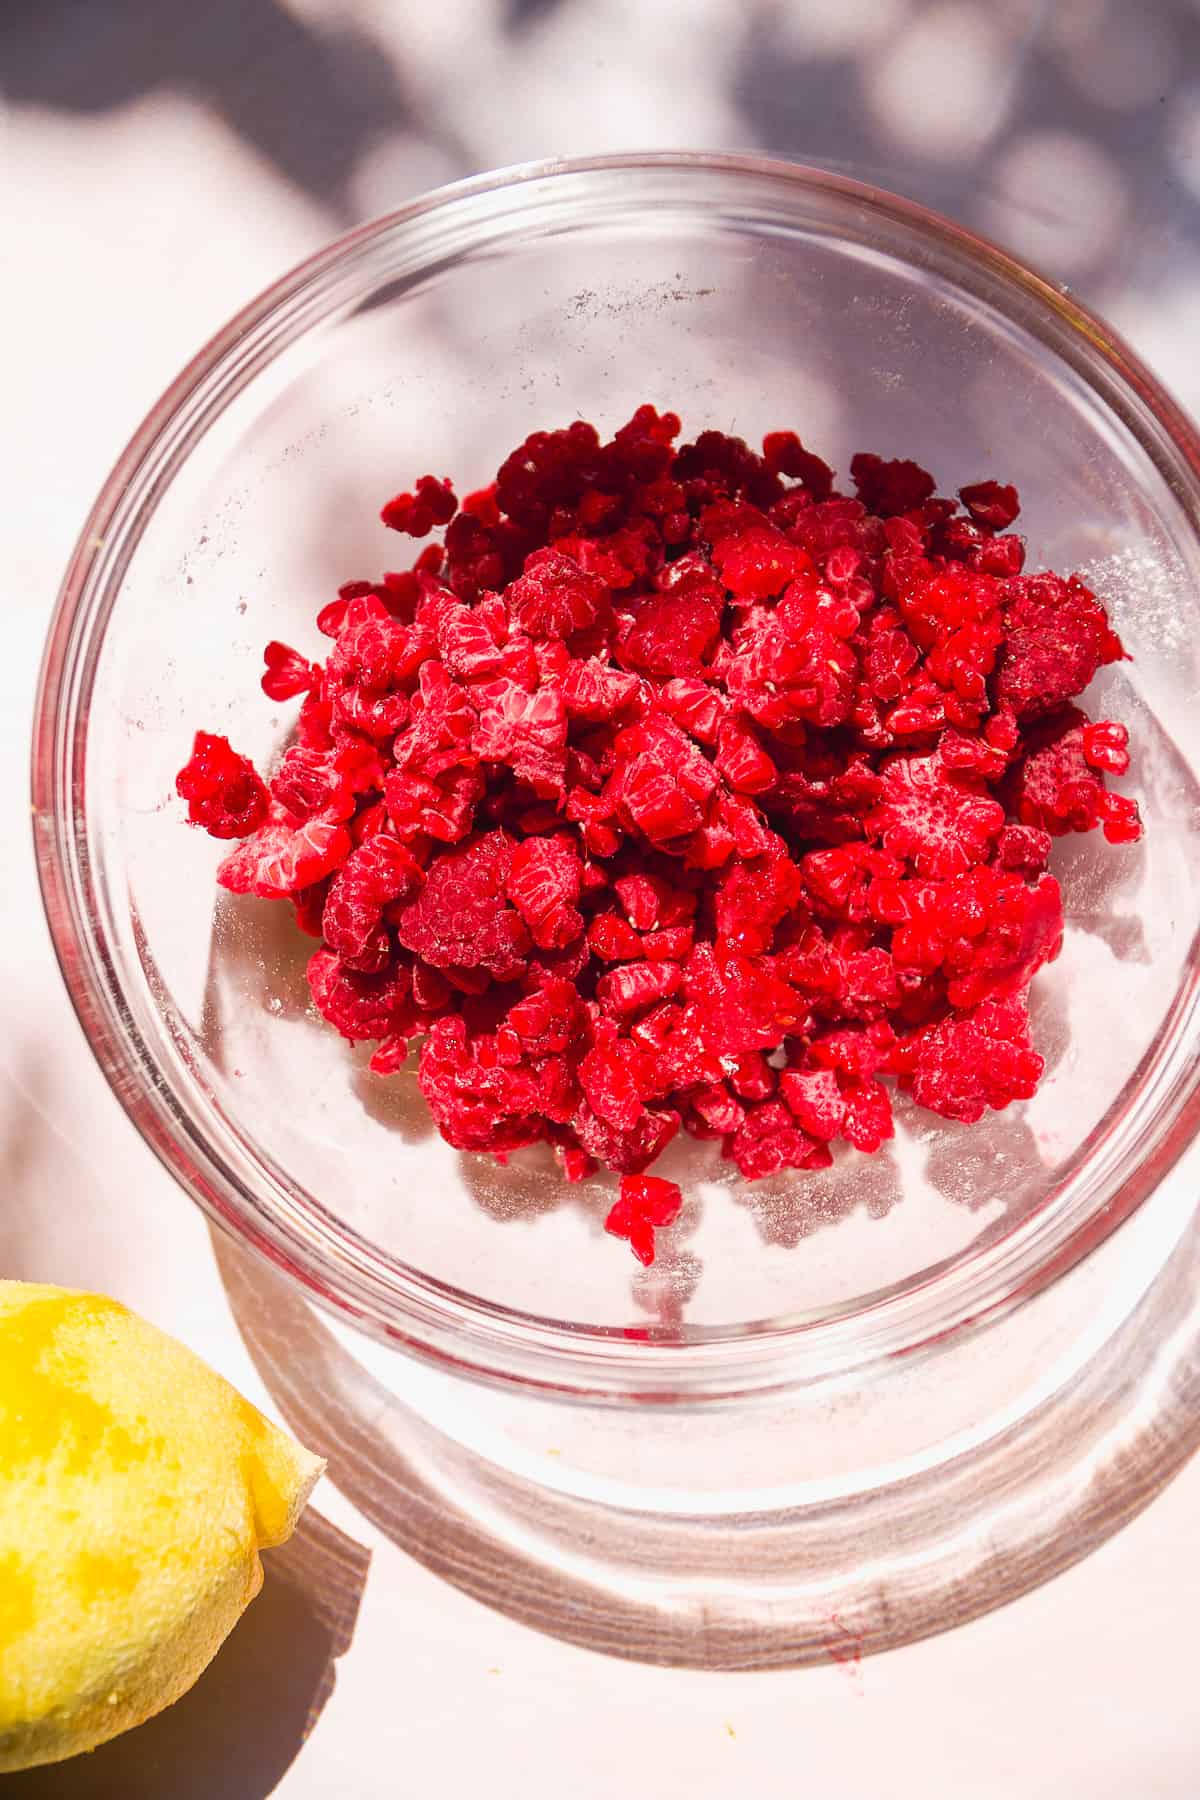 Frozen raspberries in a glass bowl.